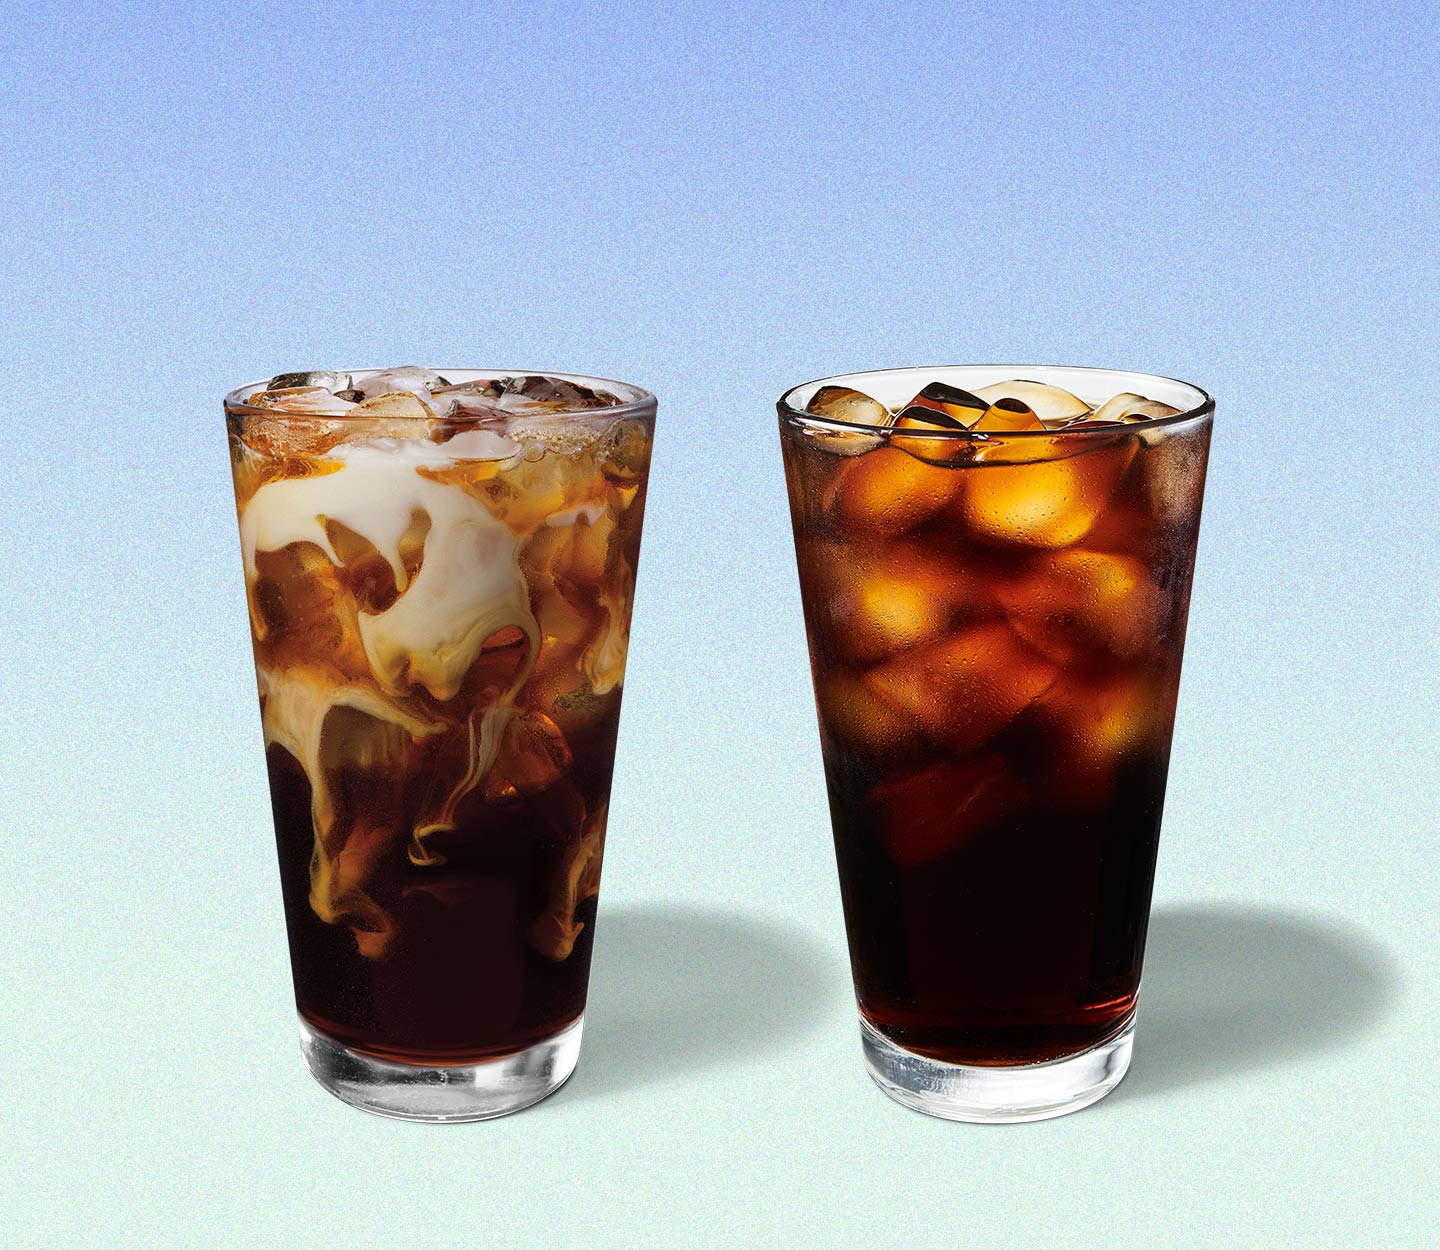 Une boisson glacée et marbrée à base de café à côté d’une autre boisson glacée à base de café. Les deux boissons sont servies dans de grands verres.